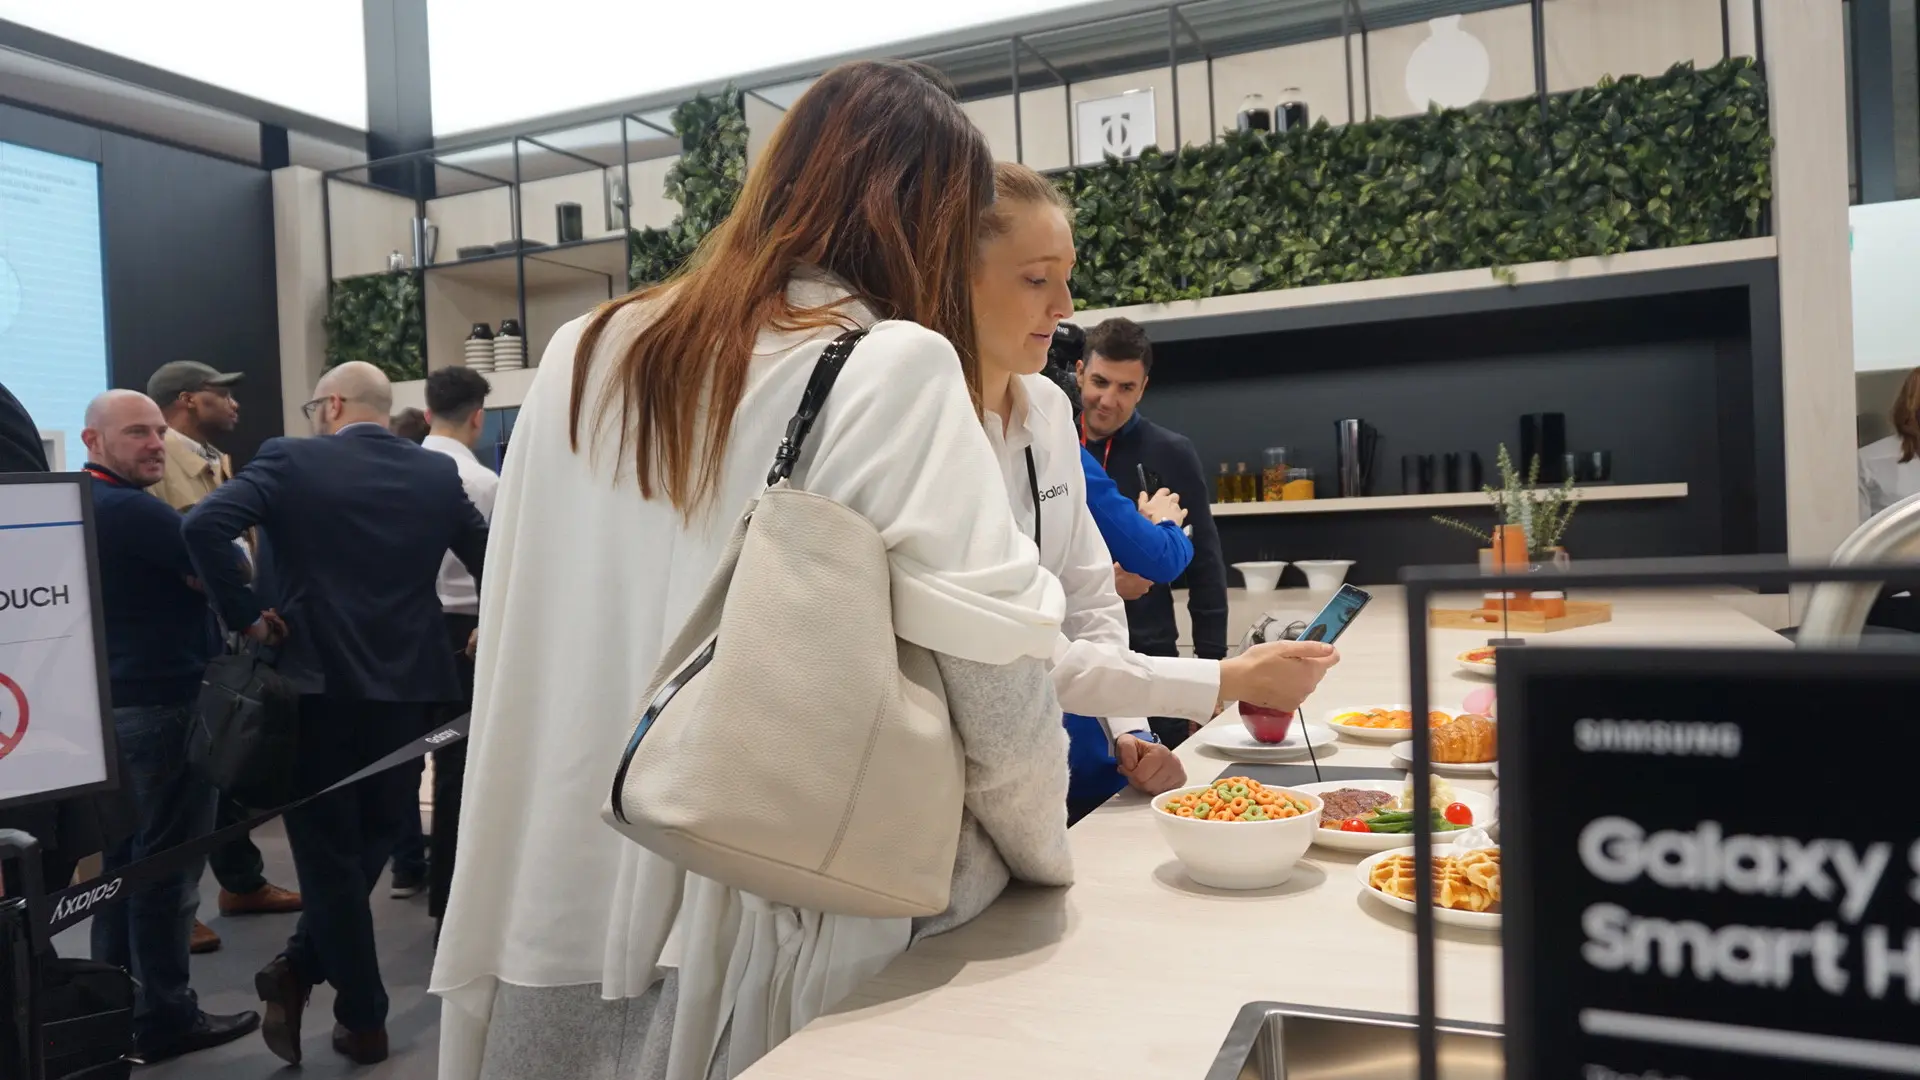 Pengunjung booth Samsung di MWC 2018 melihat-lihat ekosistem Smart Home. (Liputan6.com/ Agustin Setyo W)